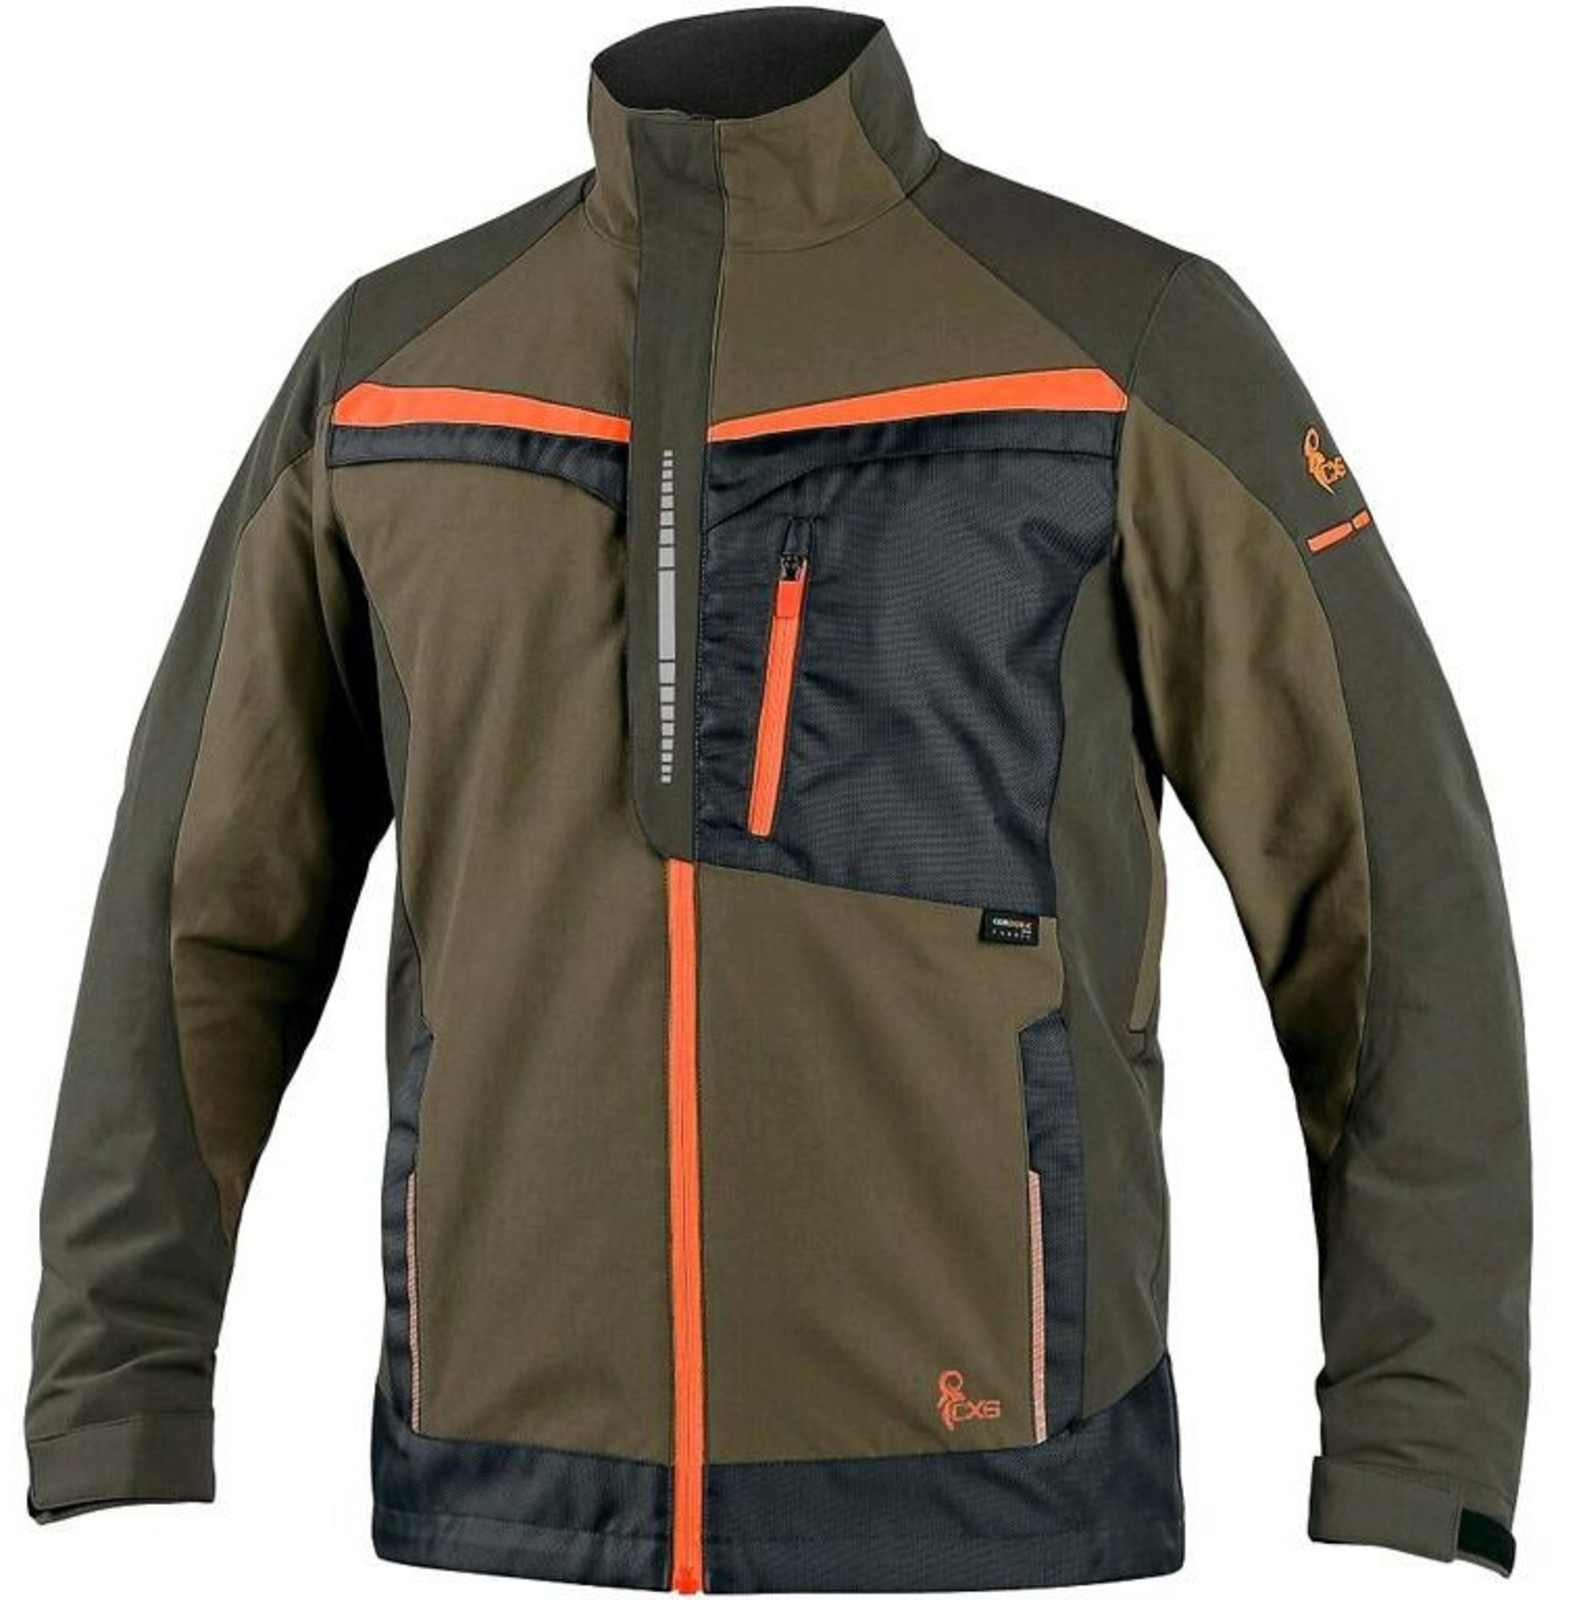 Strečová montérková bunda CXS Naos s reflexnými doplnkami - veľkosť: 52, farba: khaki/oranžová